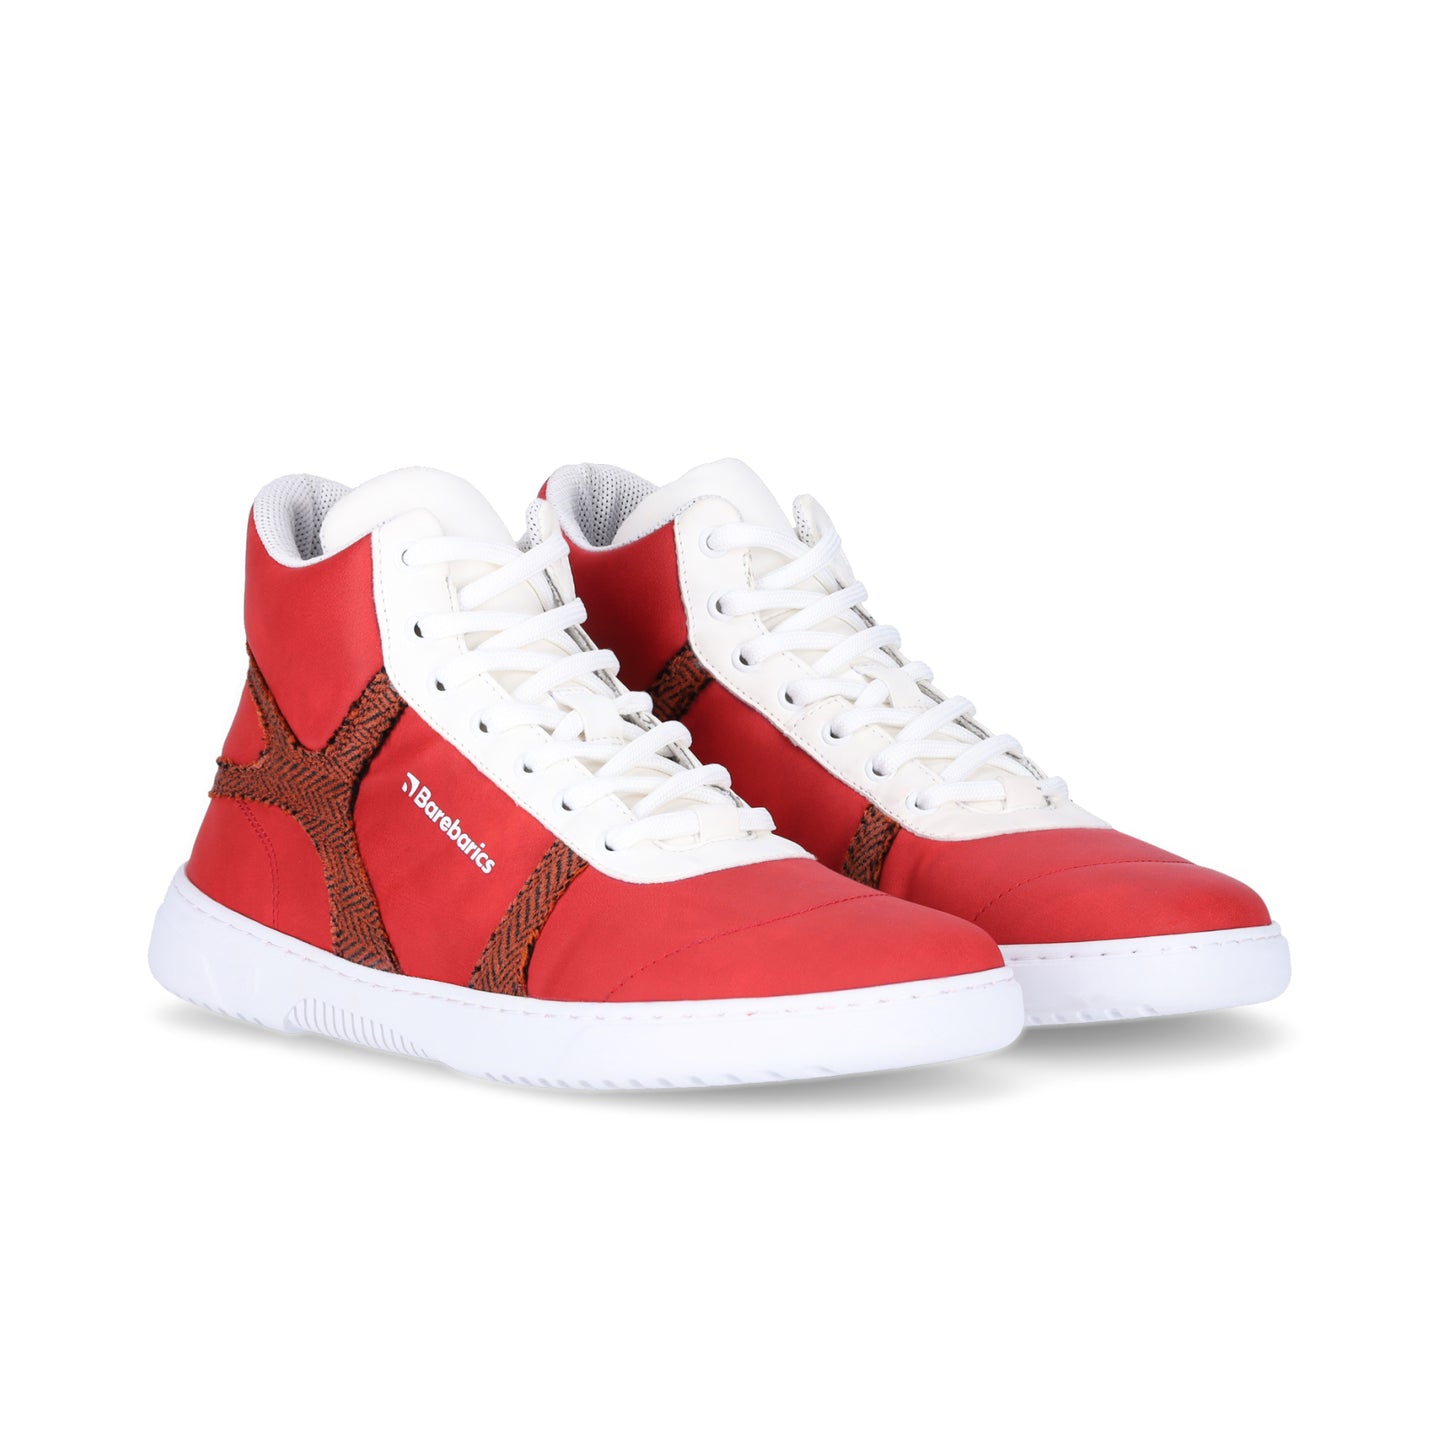 Barefoot Sneakers Barebarics - Hifly - Red & White 4 OzBarefoot Australia